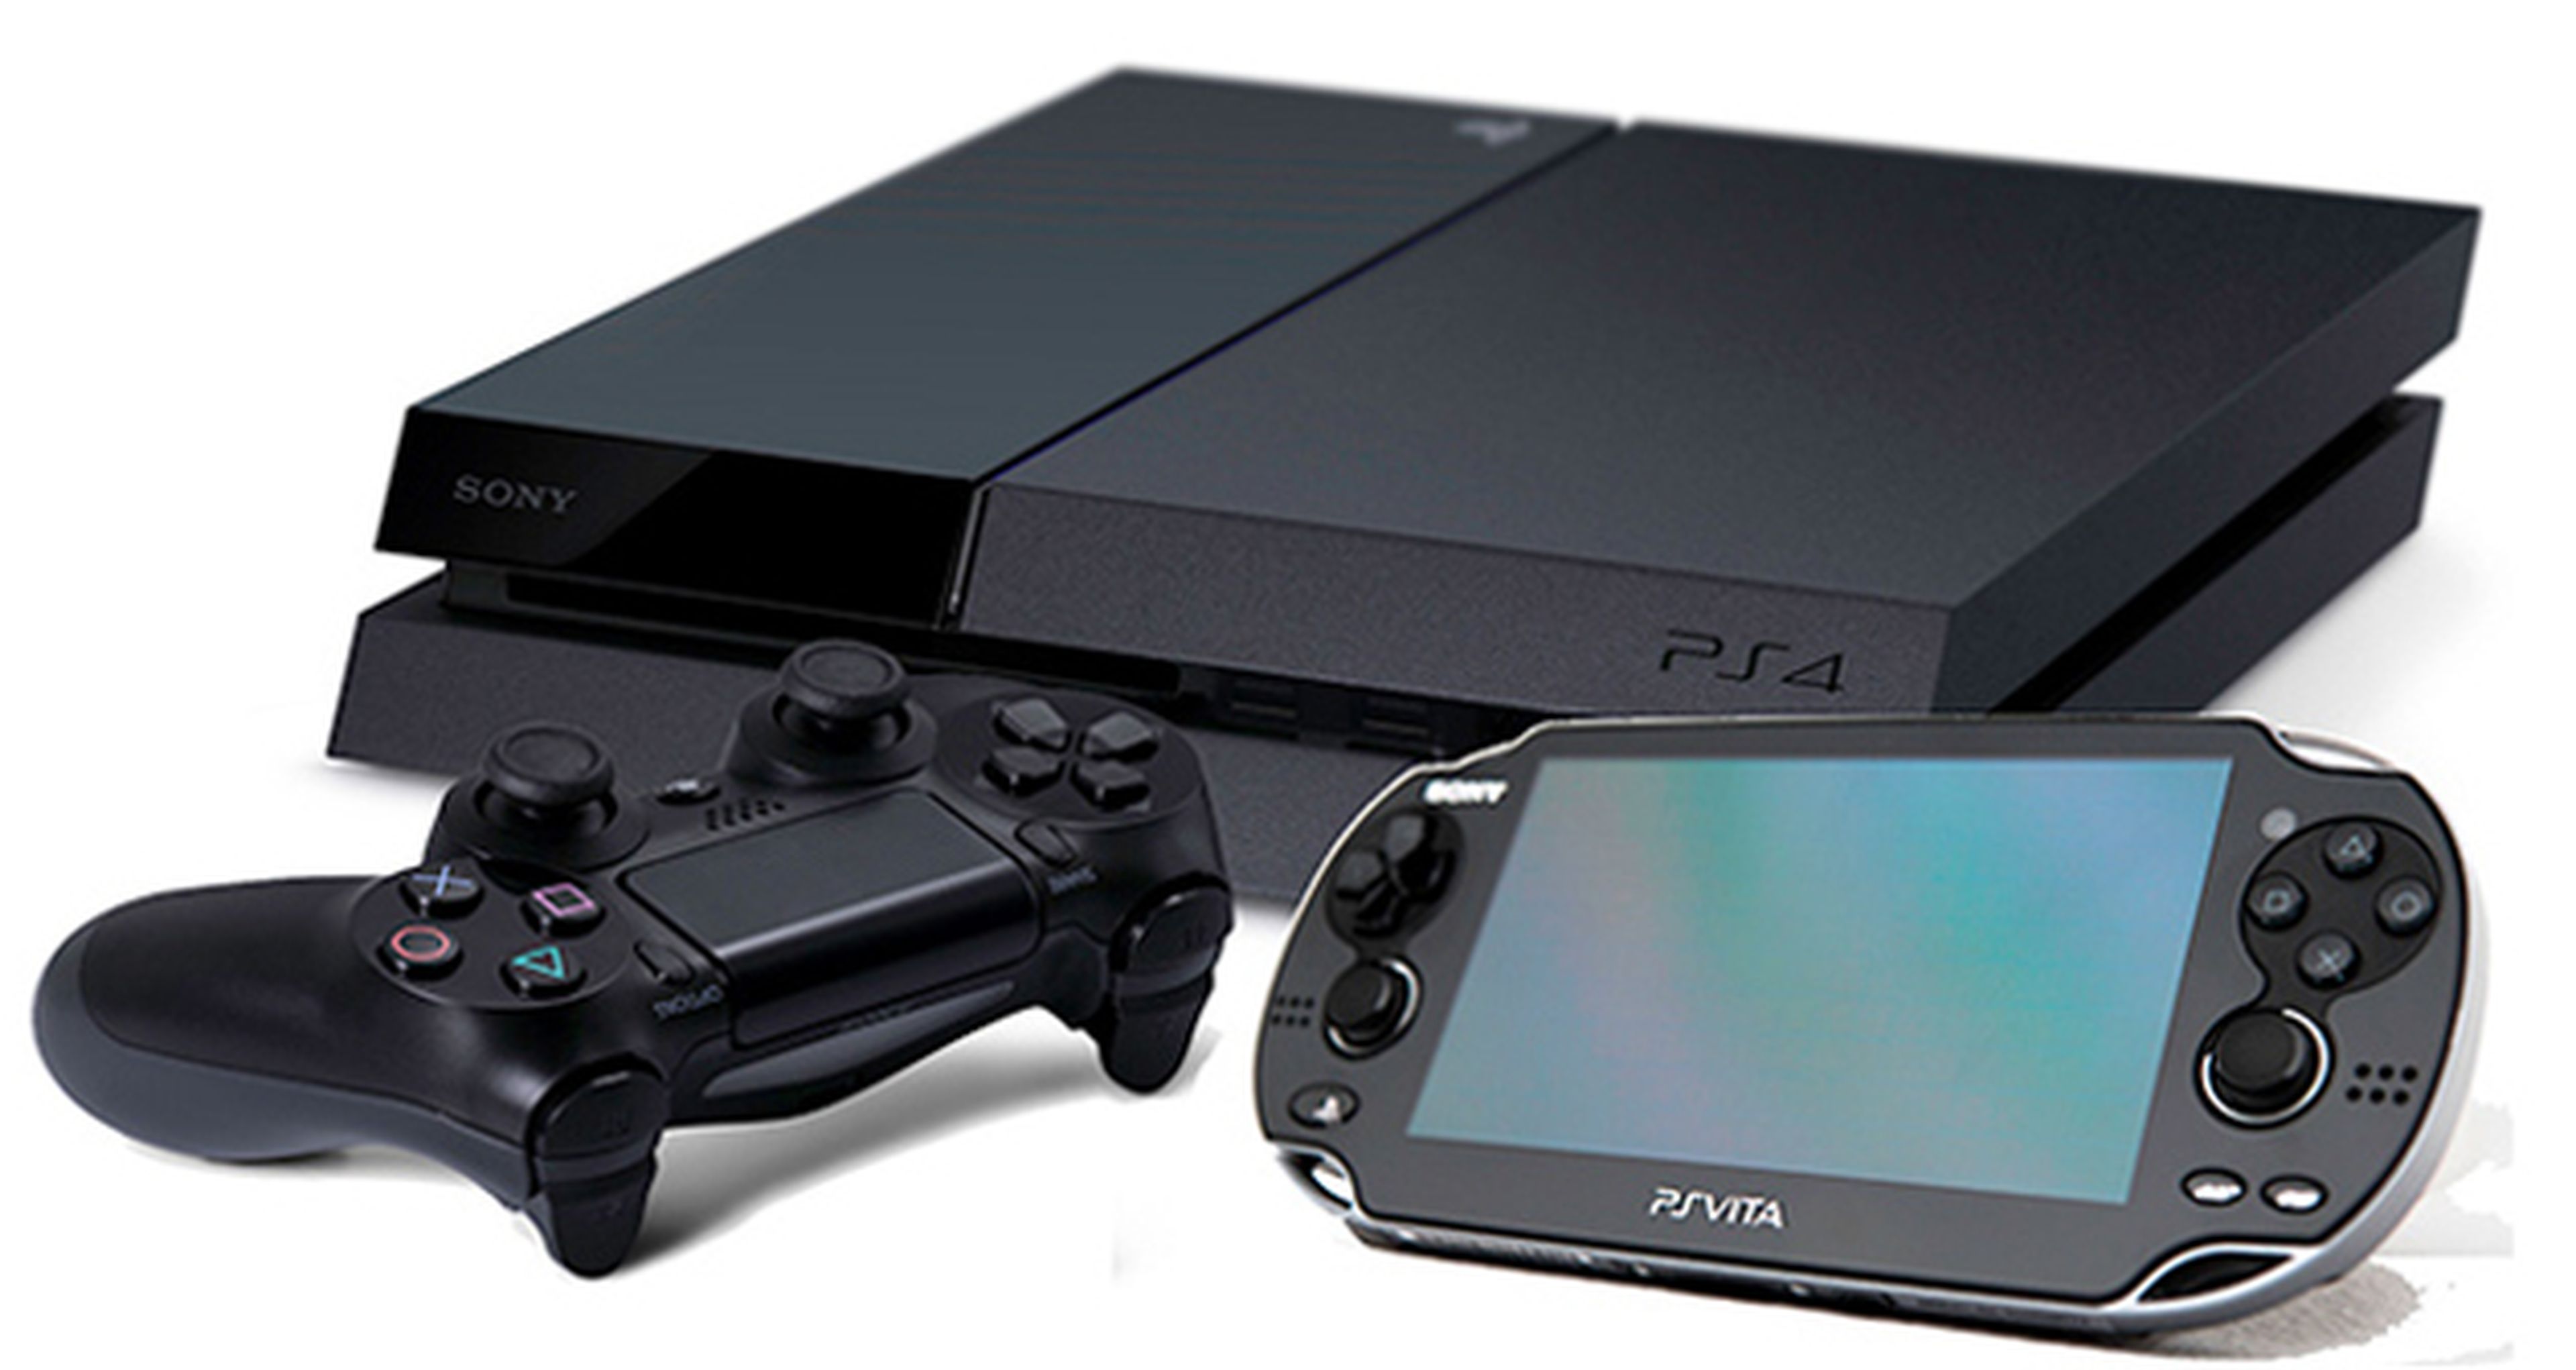 Sony quiere hacer de PlayStation una plataforma accesible y fácil